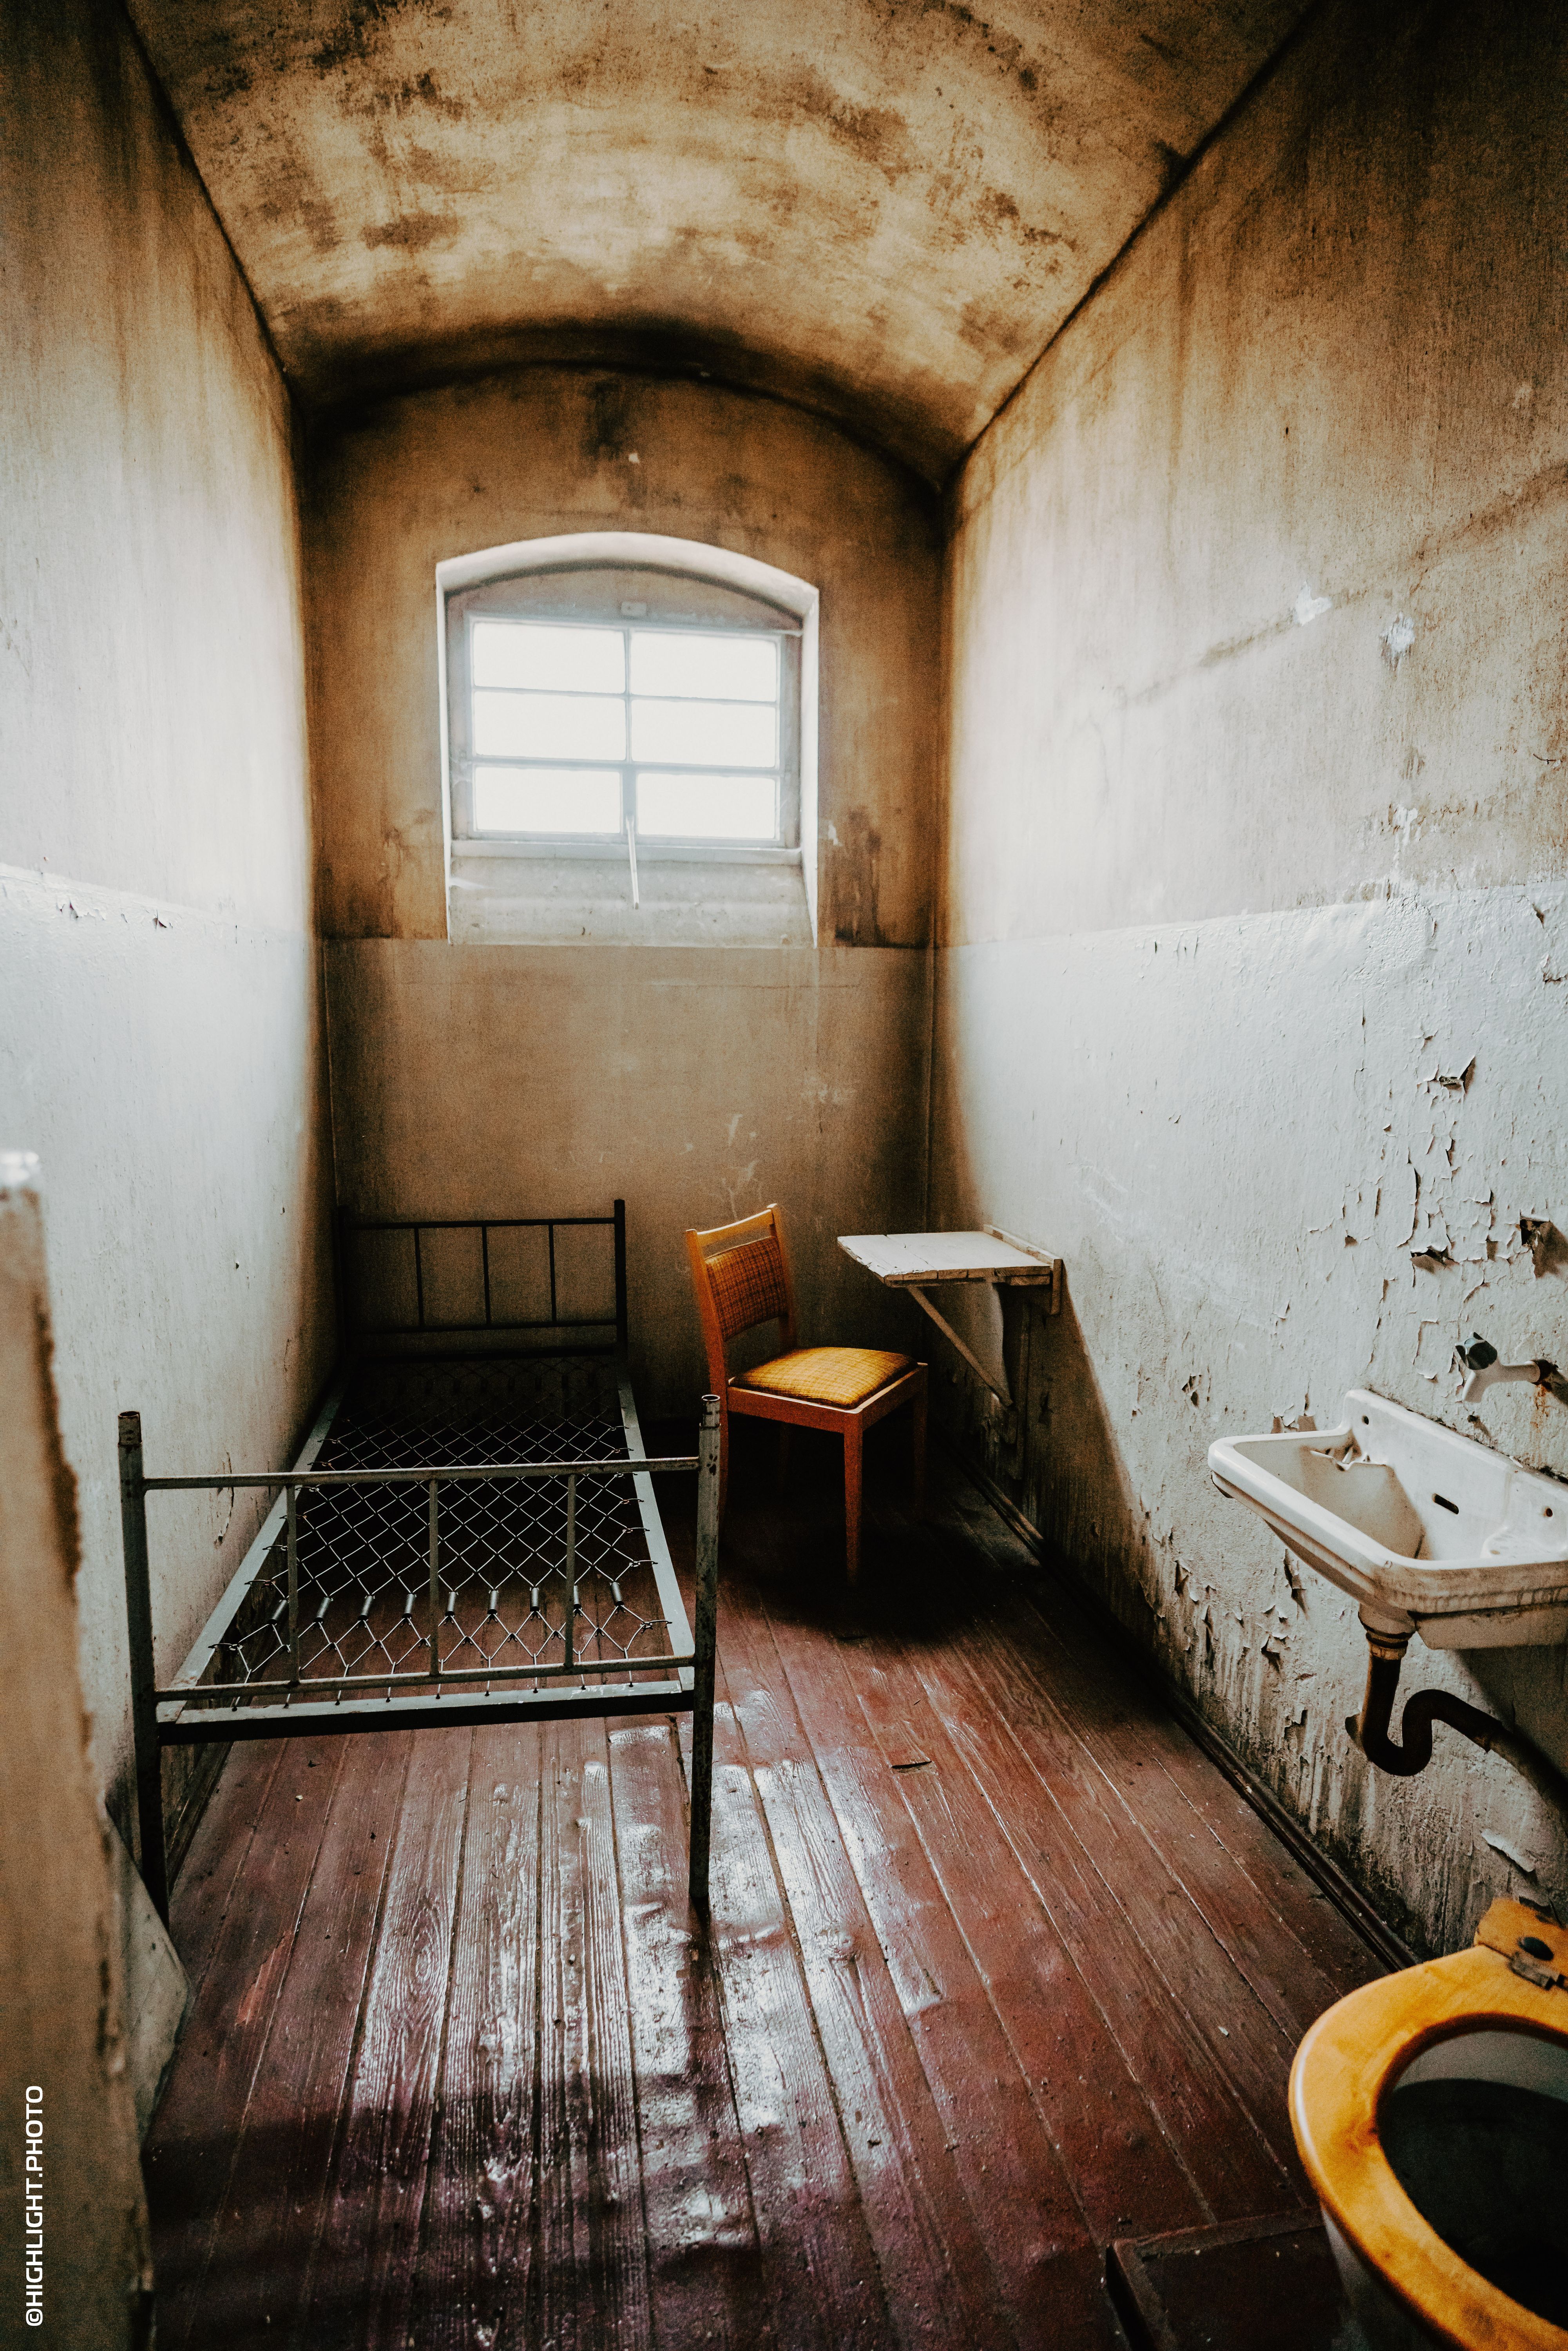 Lost Place: Gefängnis Zittau